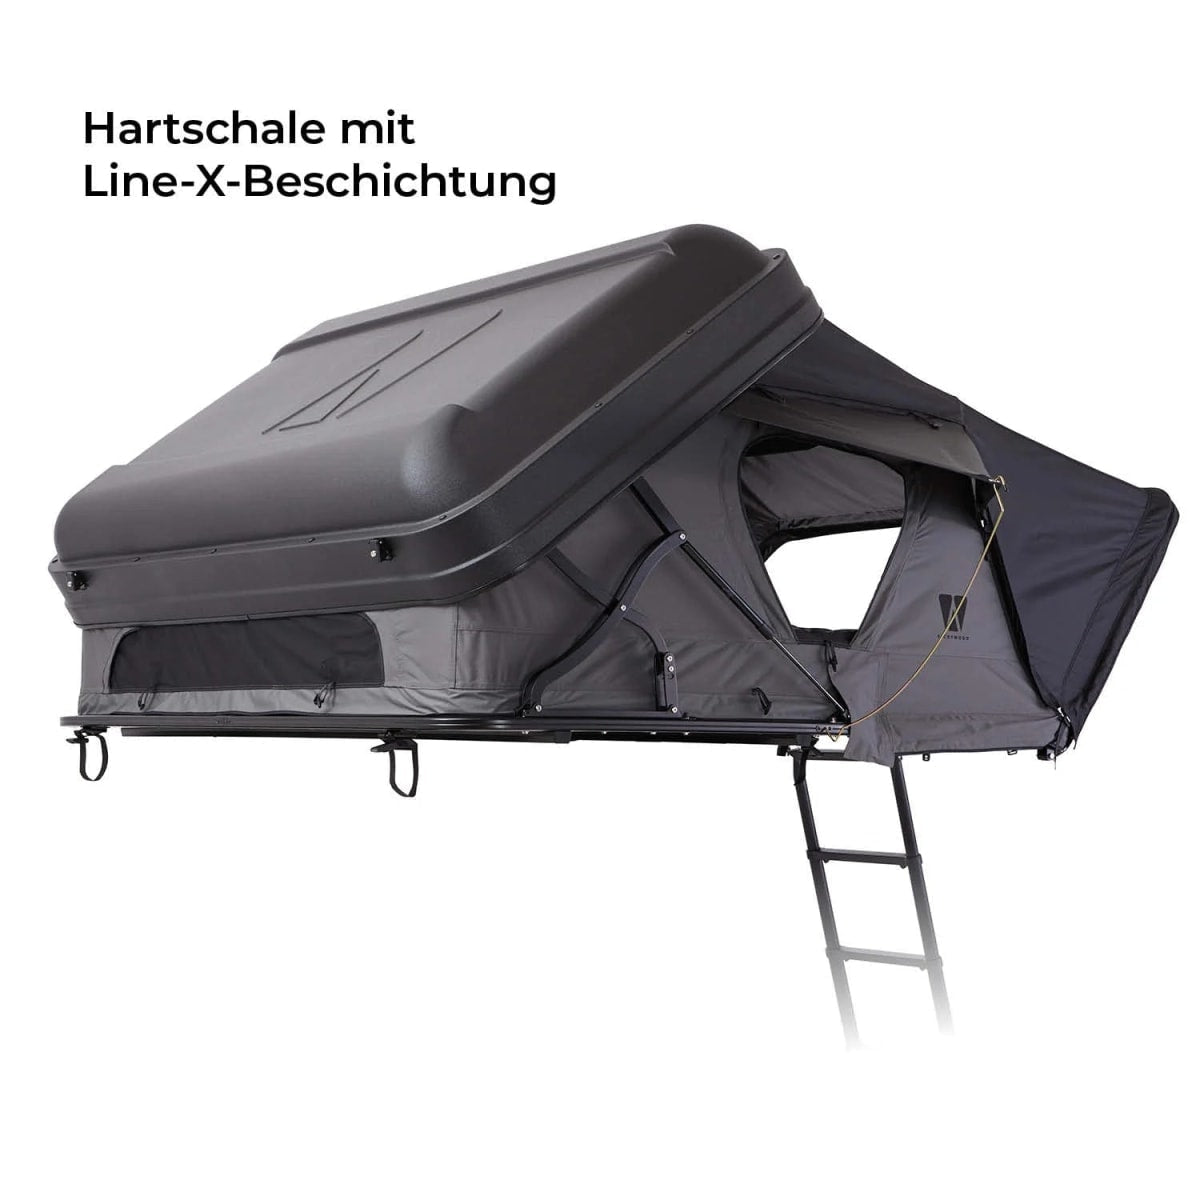 Hybrid Dachzelt mit Hartschale MIGHTY OAK Gen 3.0 160 Eco